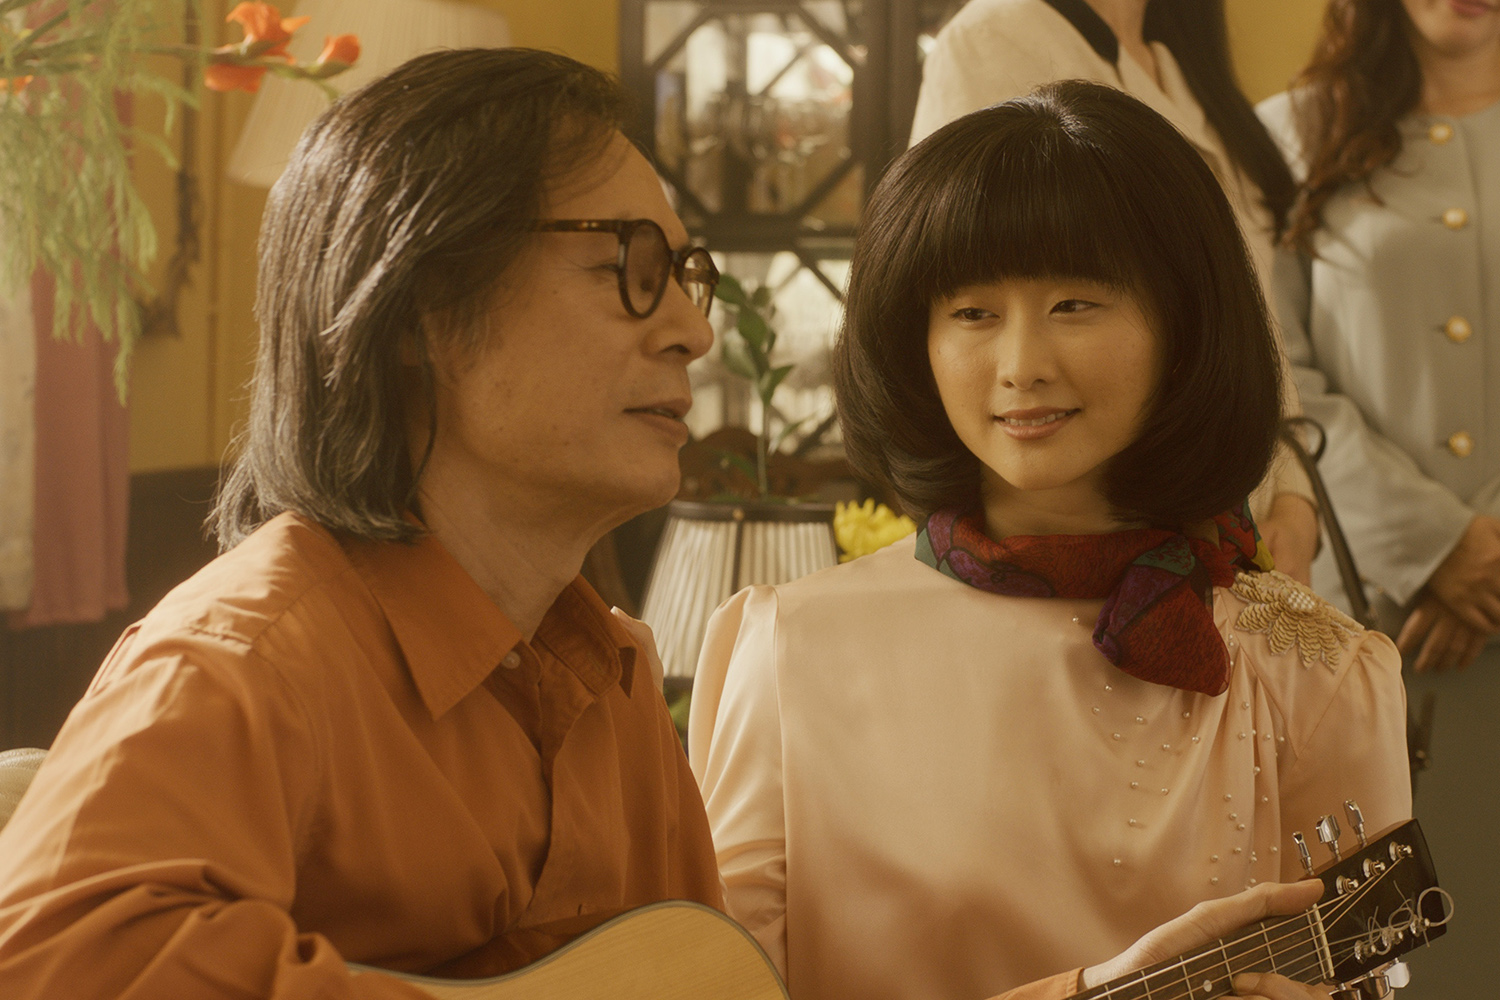 Hình ảnh tái hiện nhạc sĩ Trịnh Công Sơn và nhân vật Yoshii Michiko trên phim